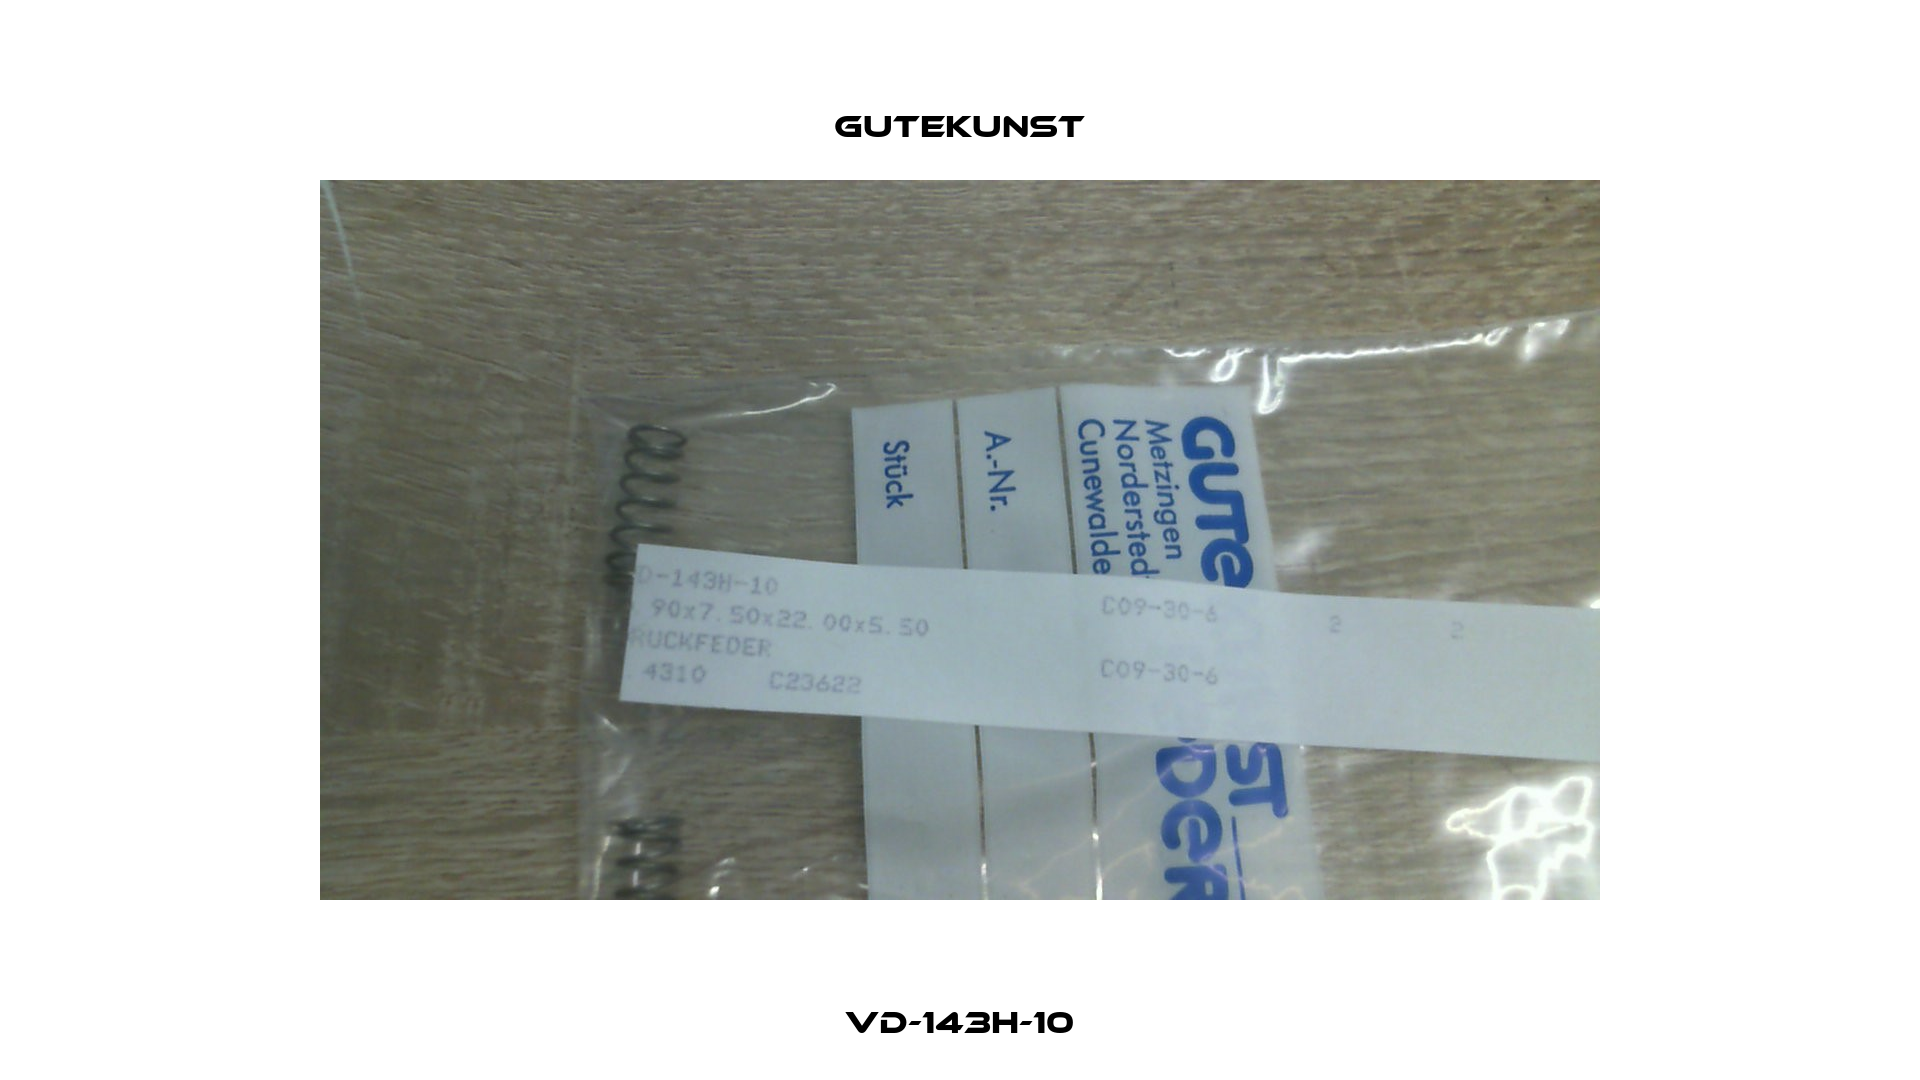 VD-143H-10 Gutekunst